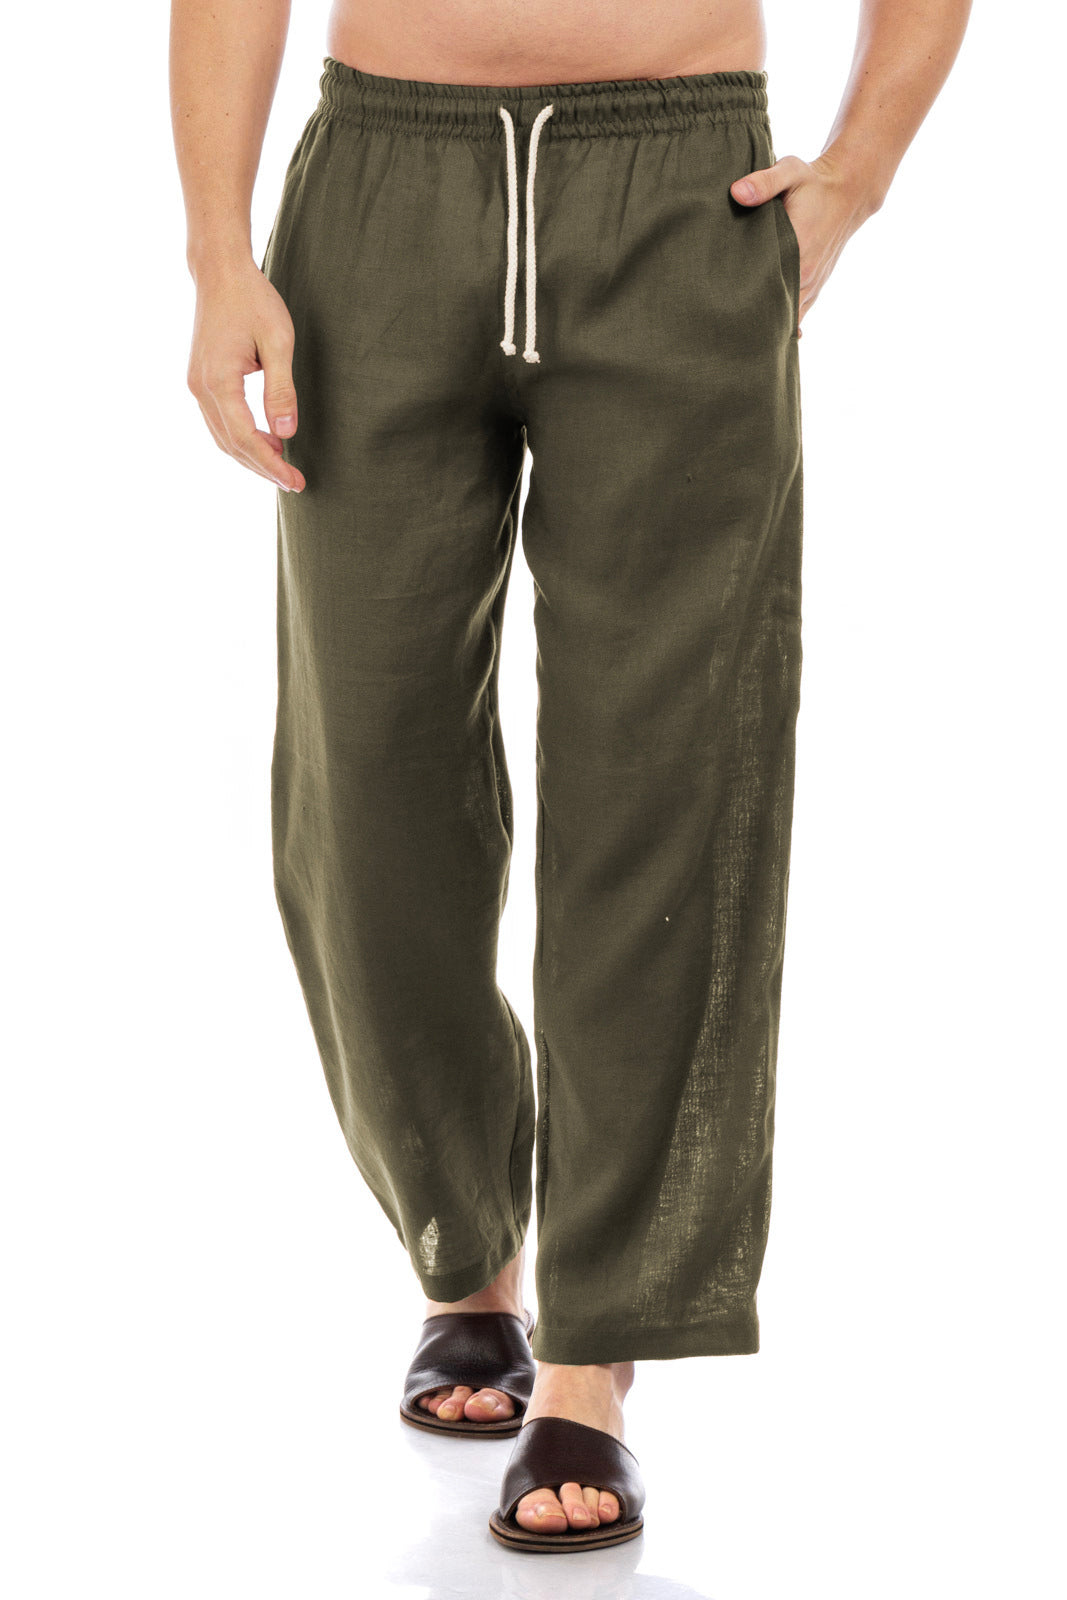 Cubavera Mens Linen Blend Drawstring Pants - Walmart.com